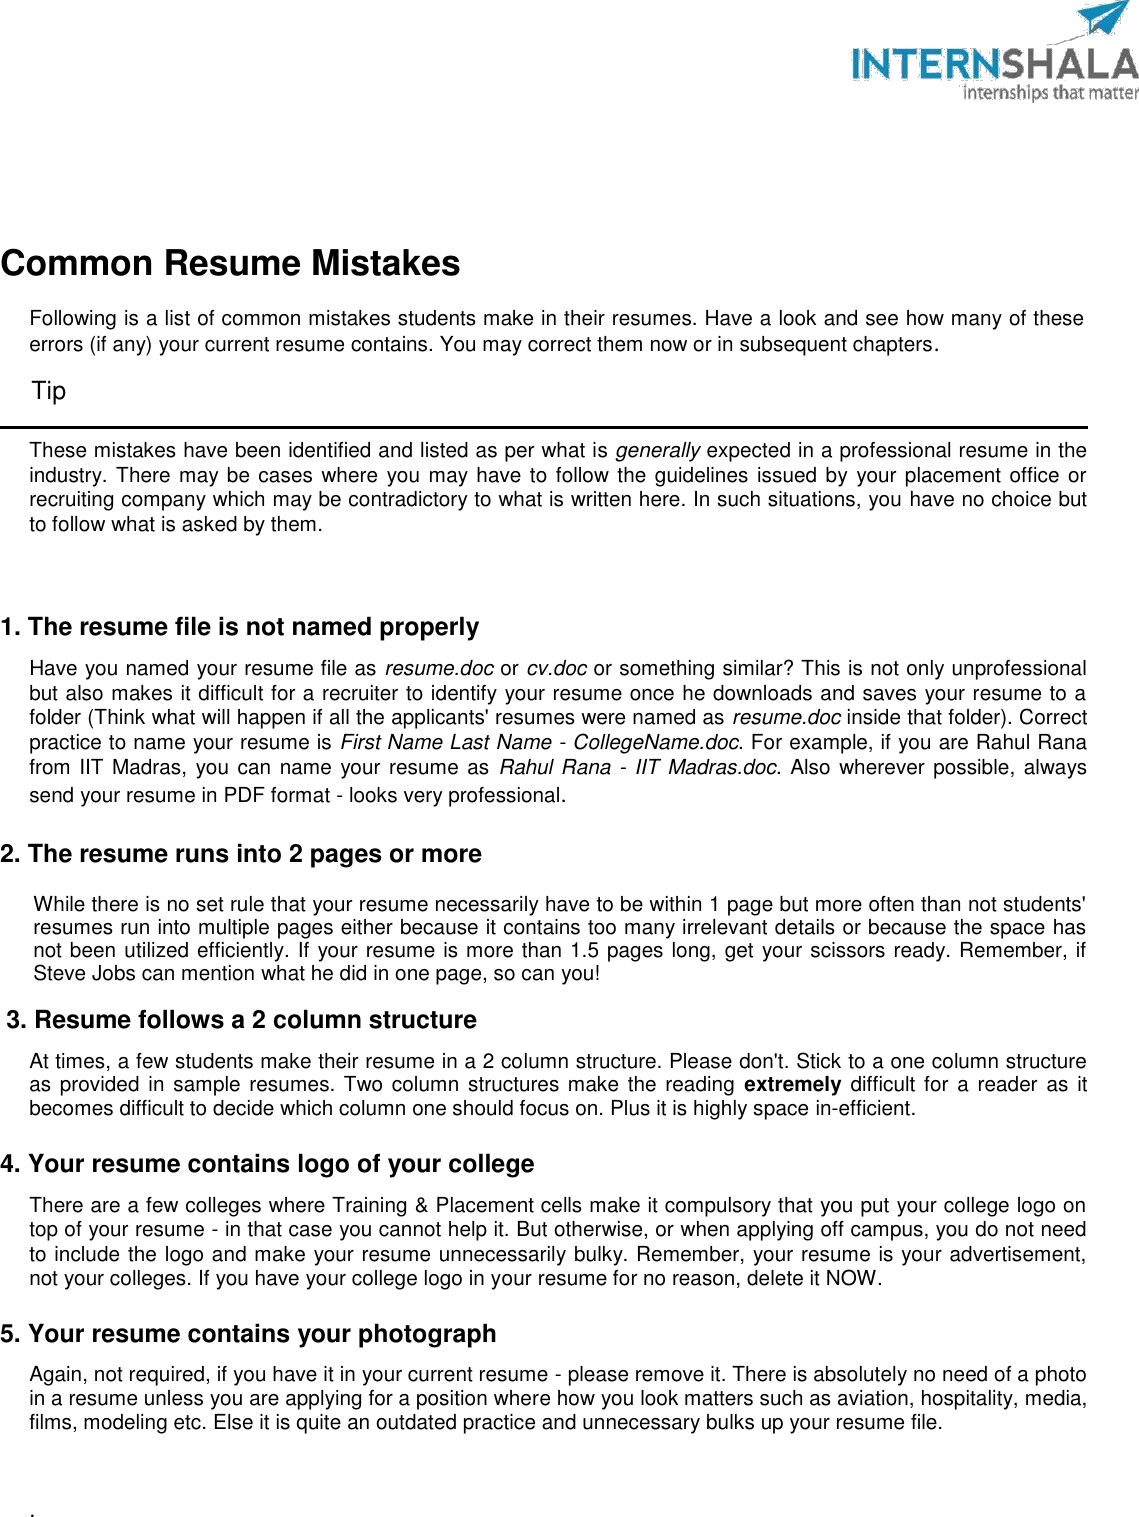 Page 3 of 8 - Internshala Resume Guide